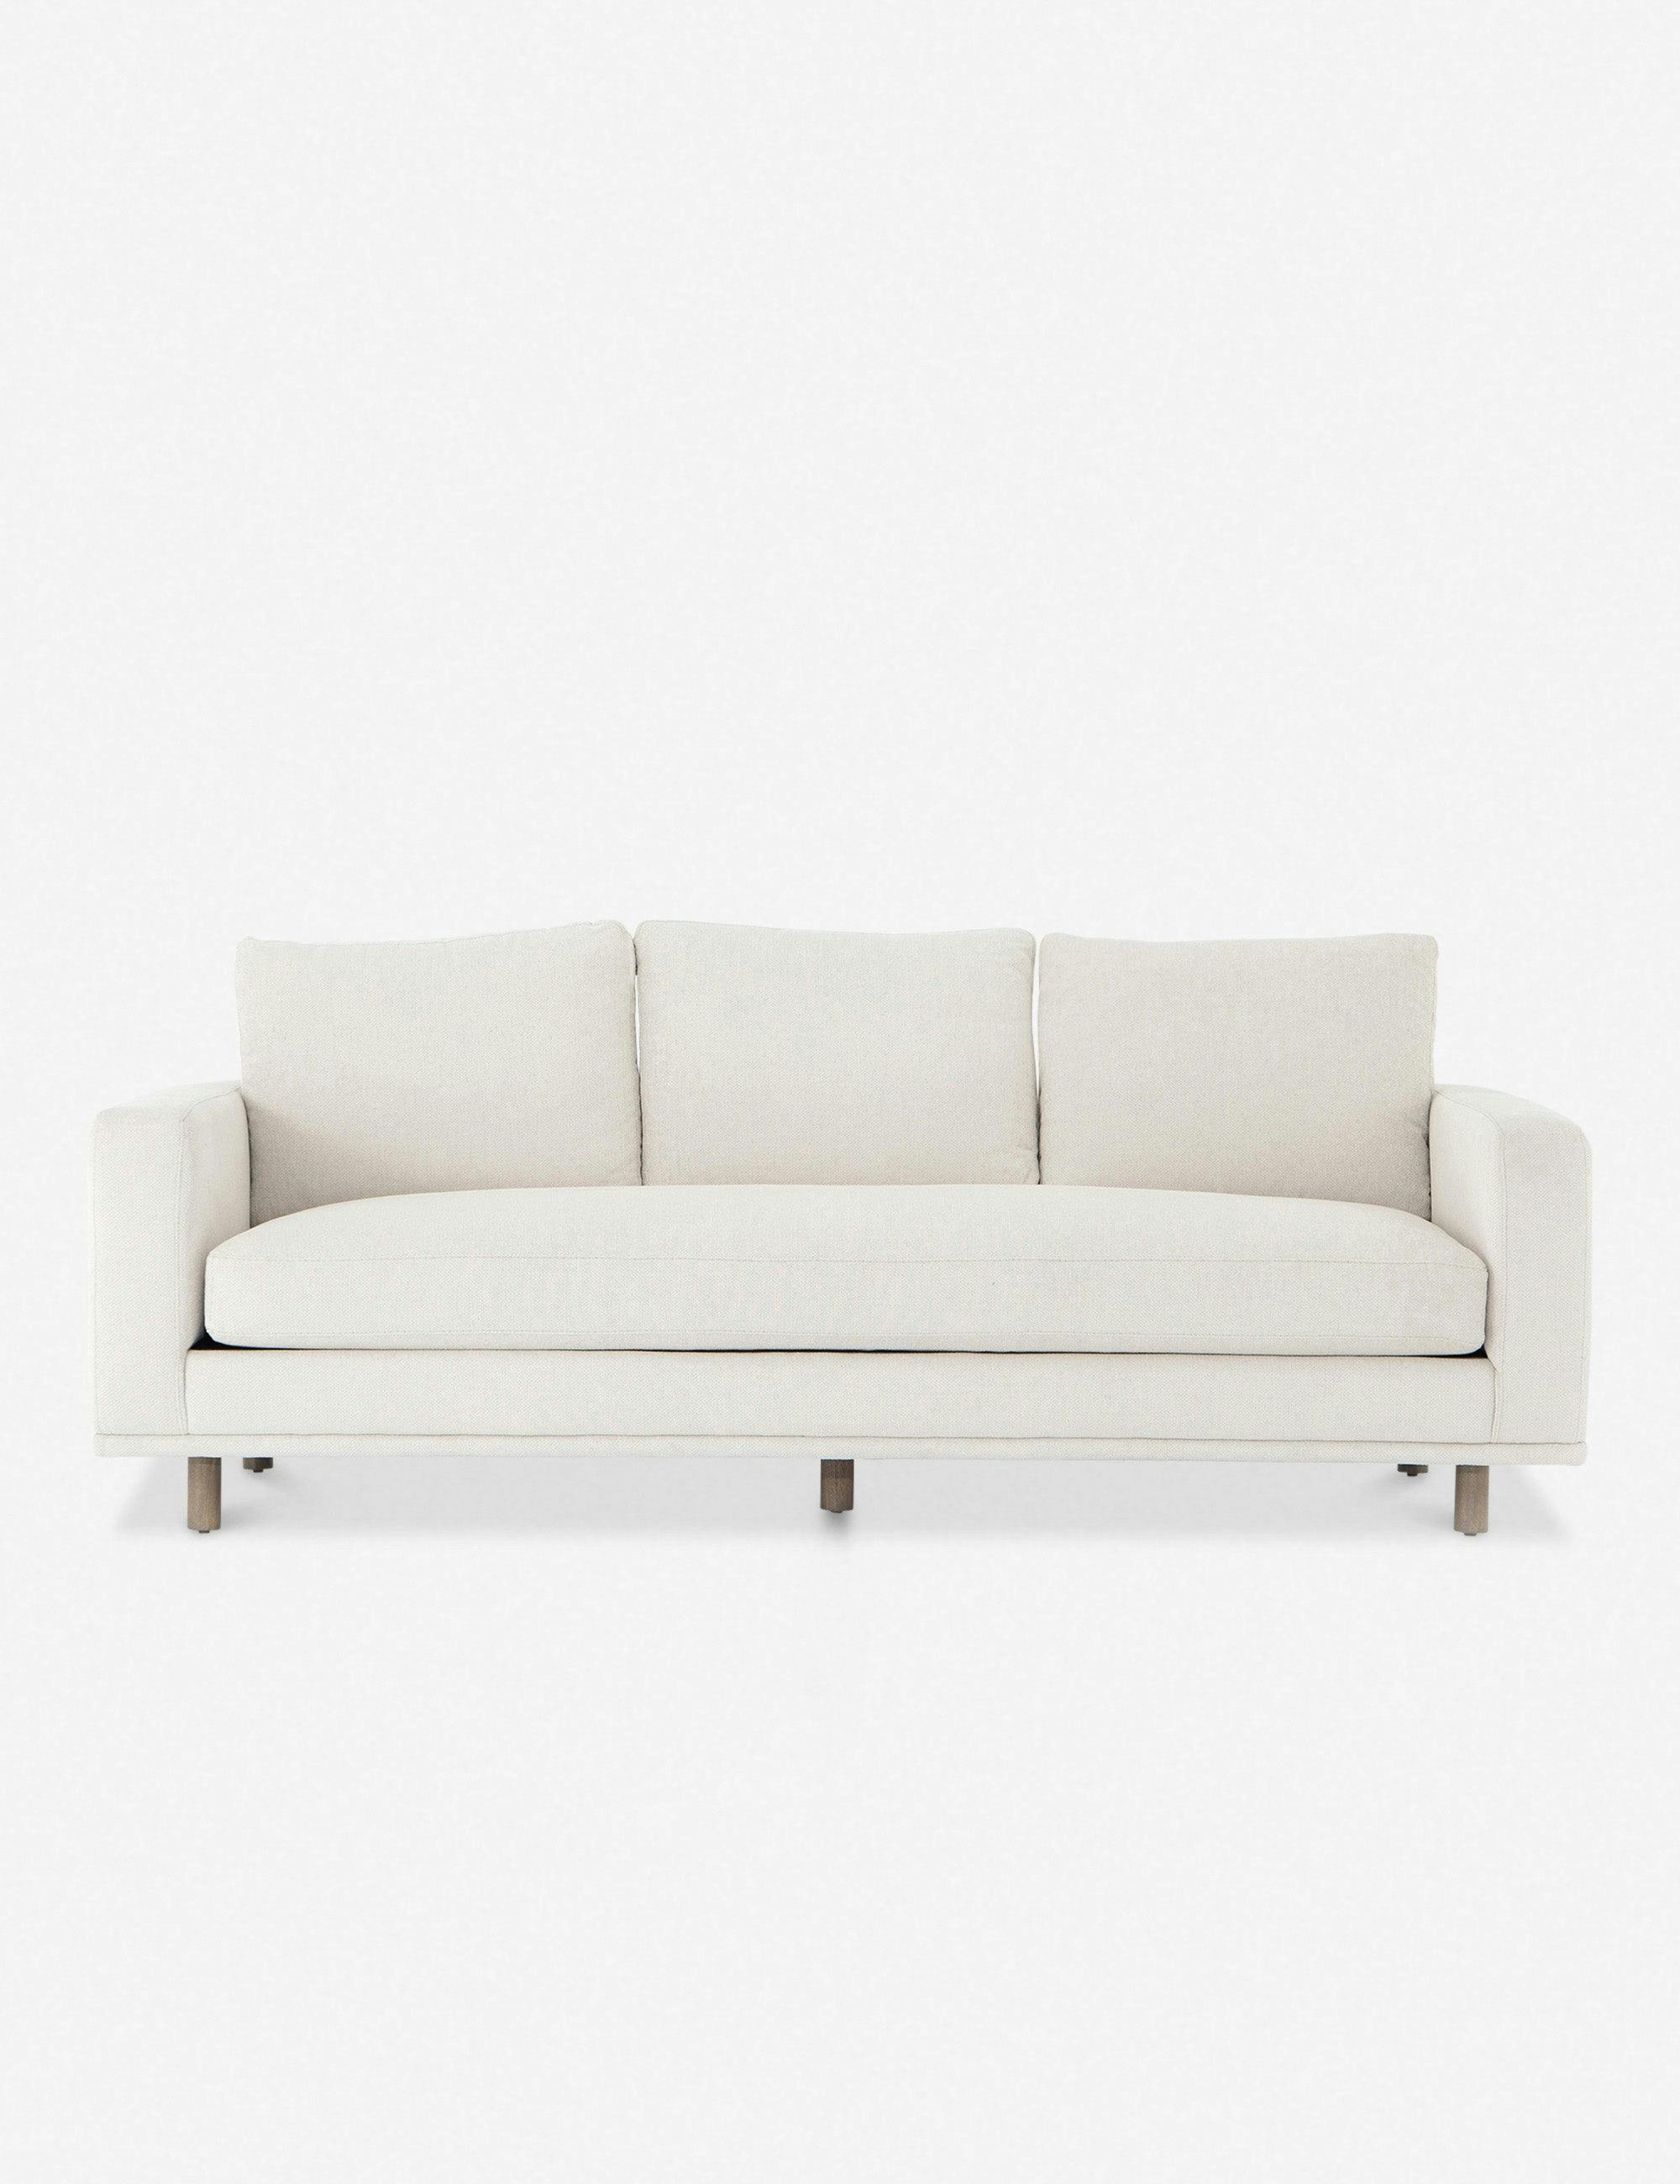 Alzira 87" Bonnell Ivory Upholstered Sofa